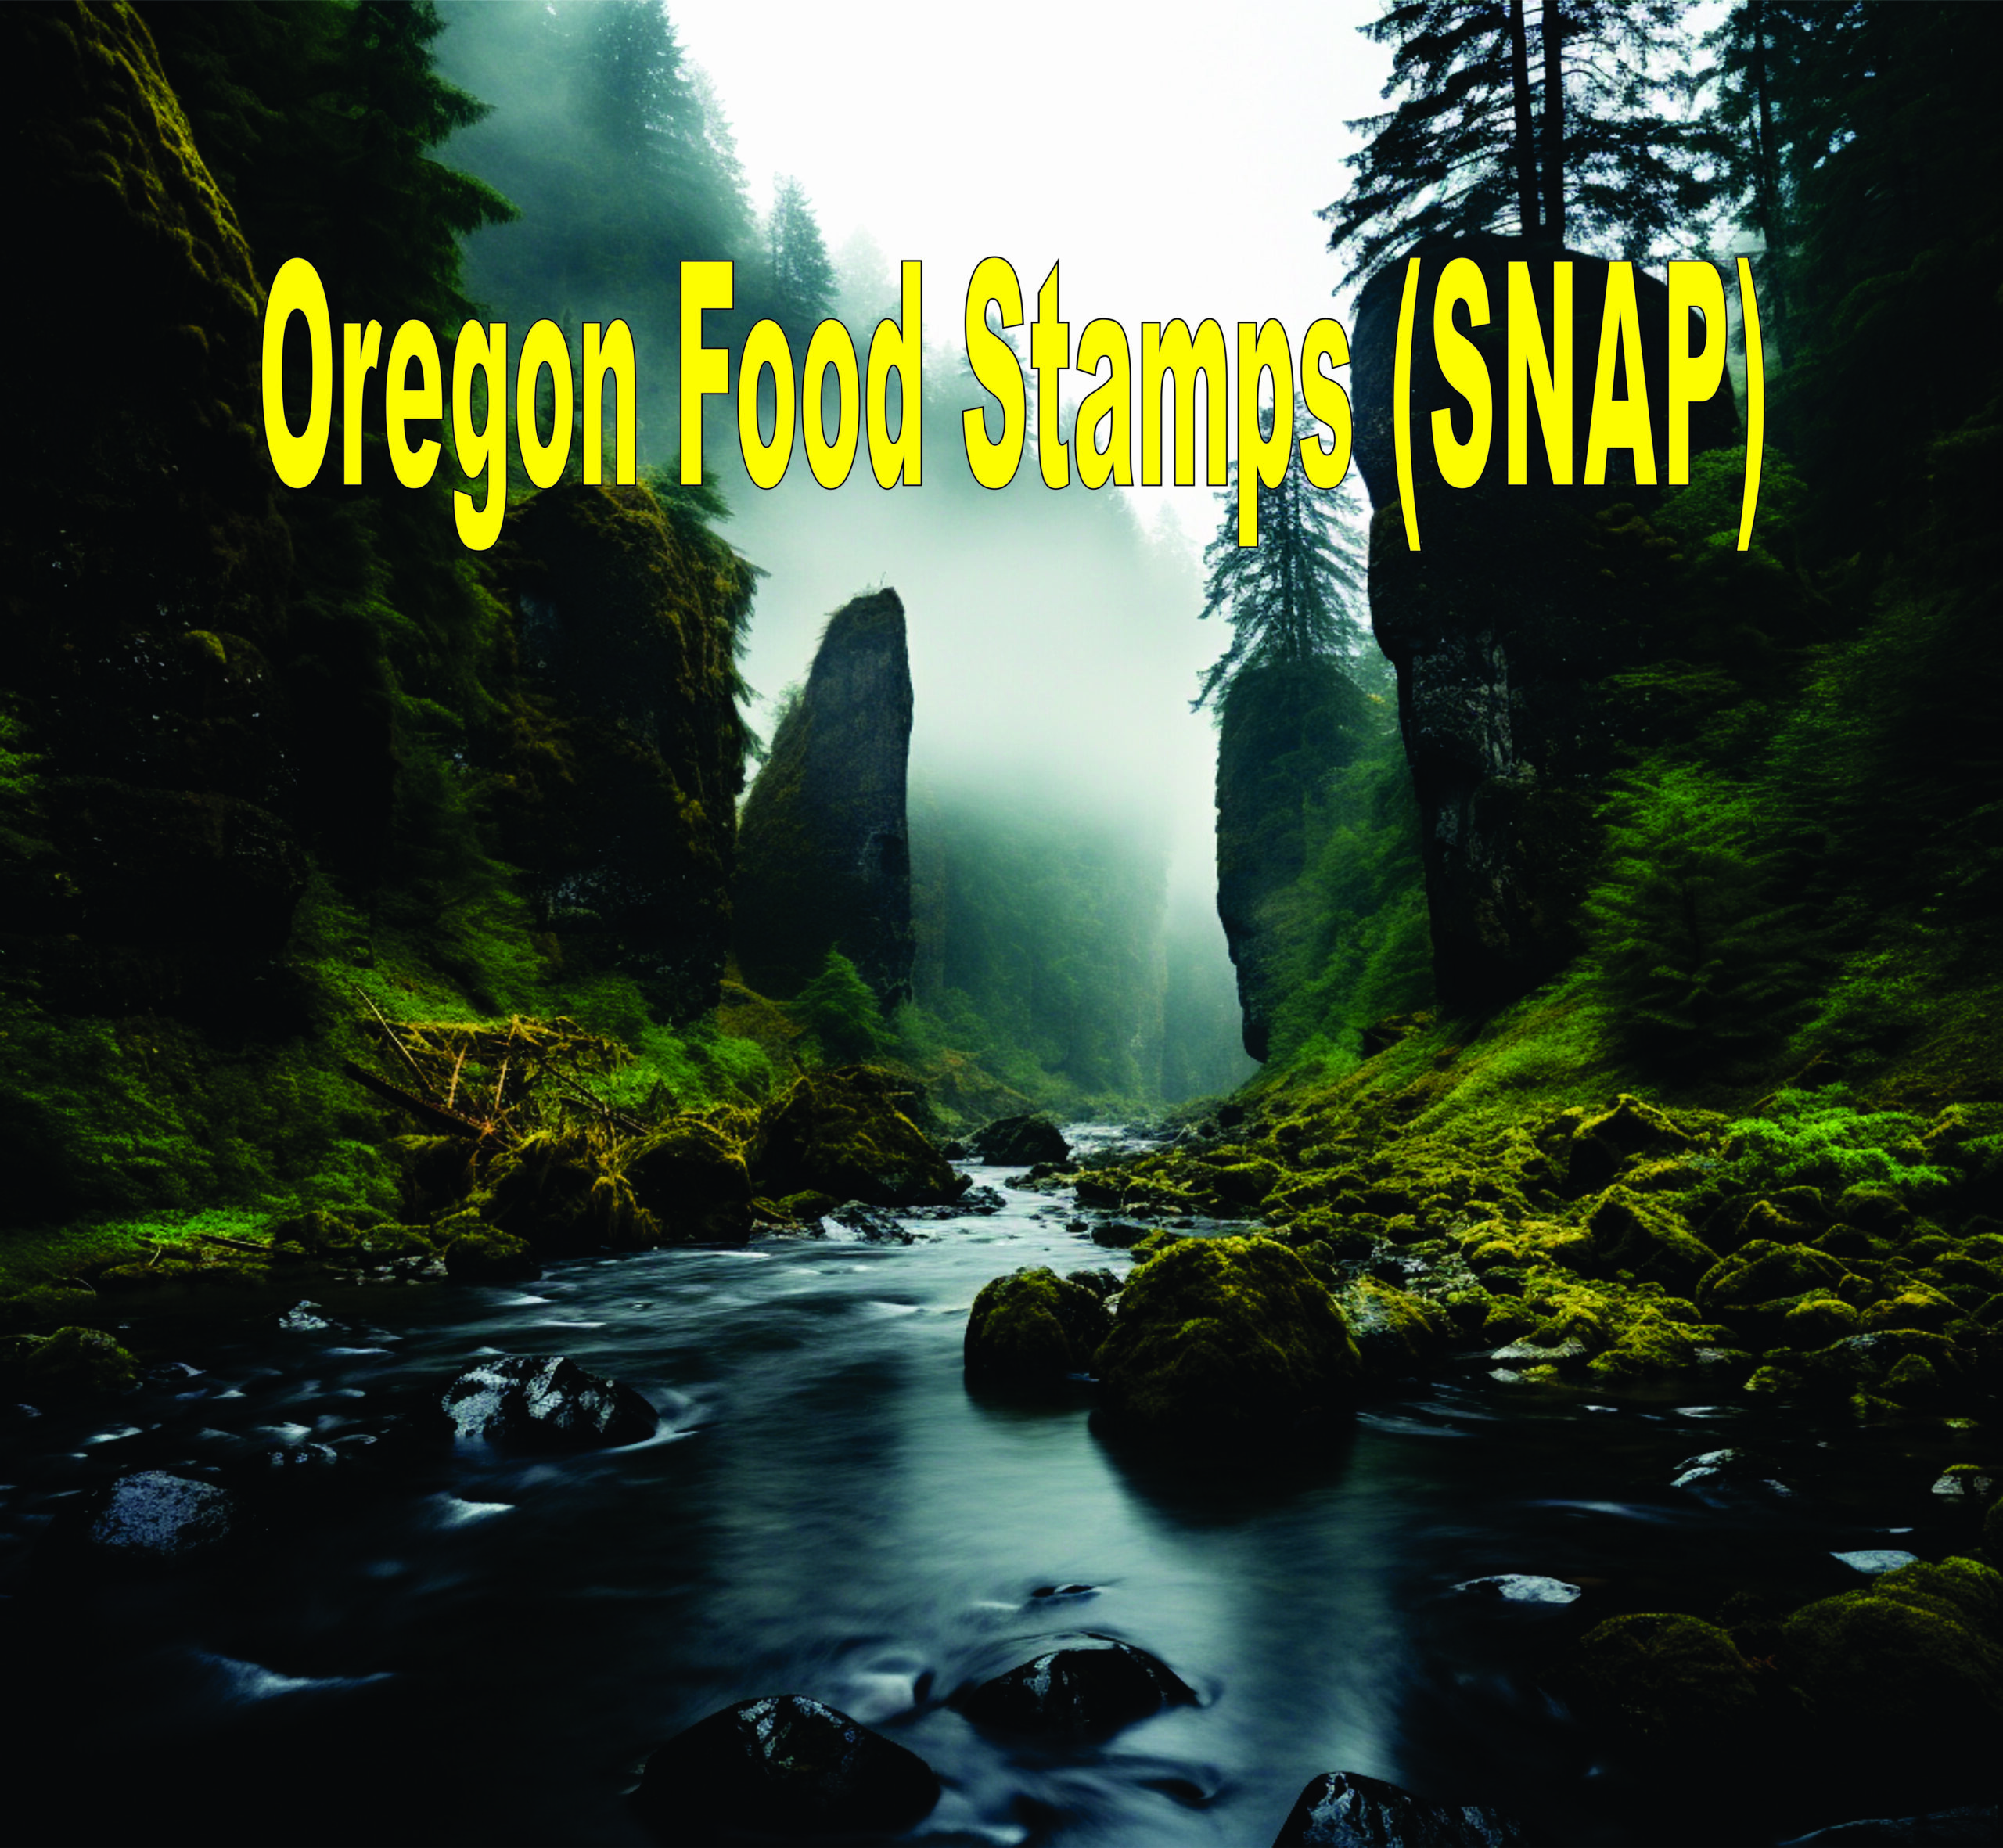 Oregon Food Stamps (snap)